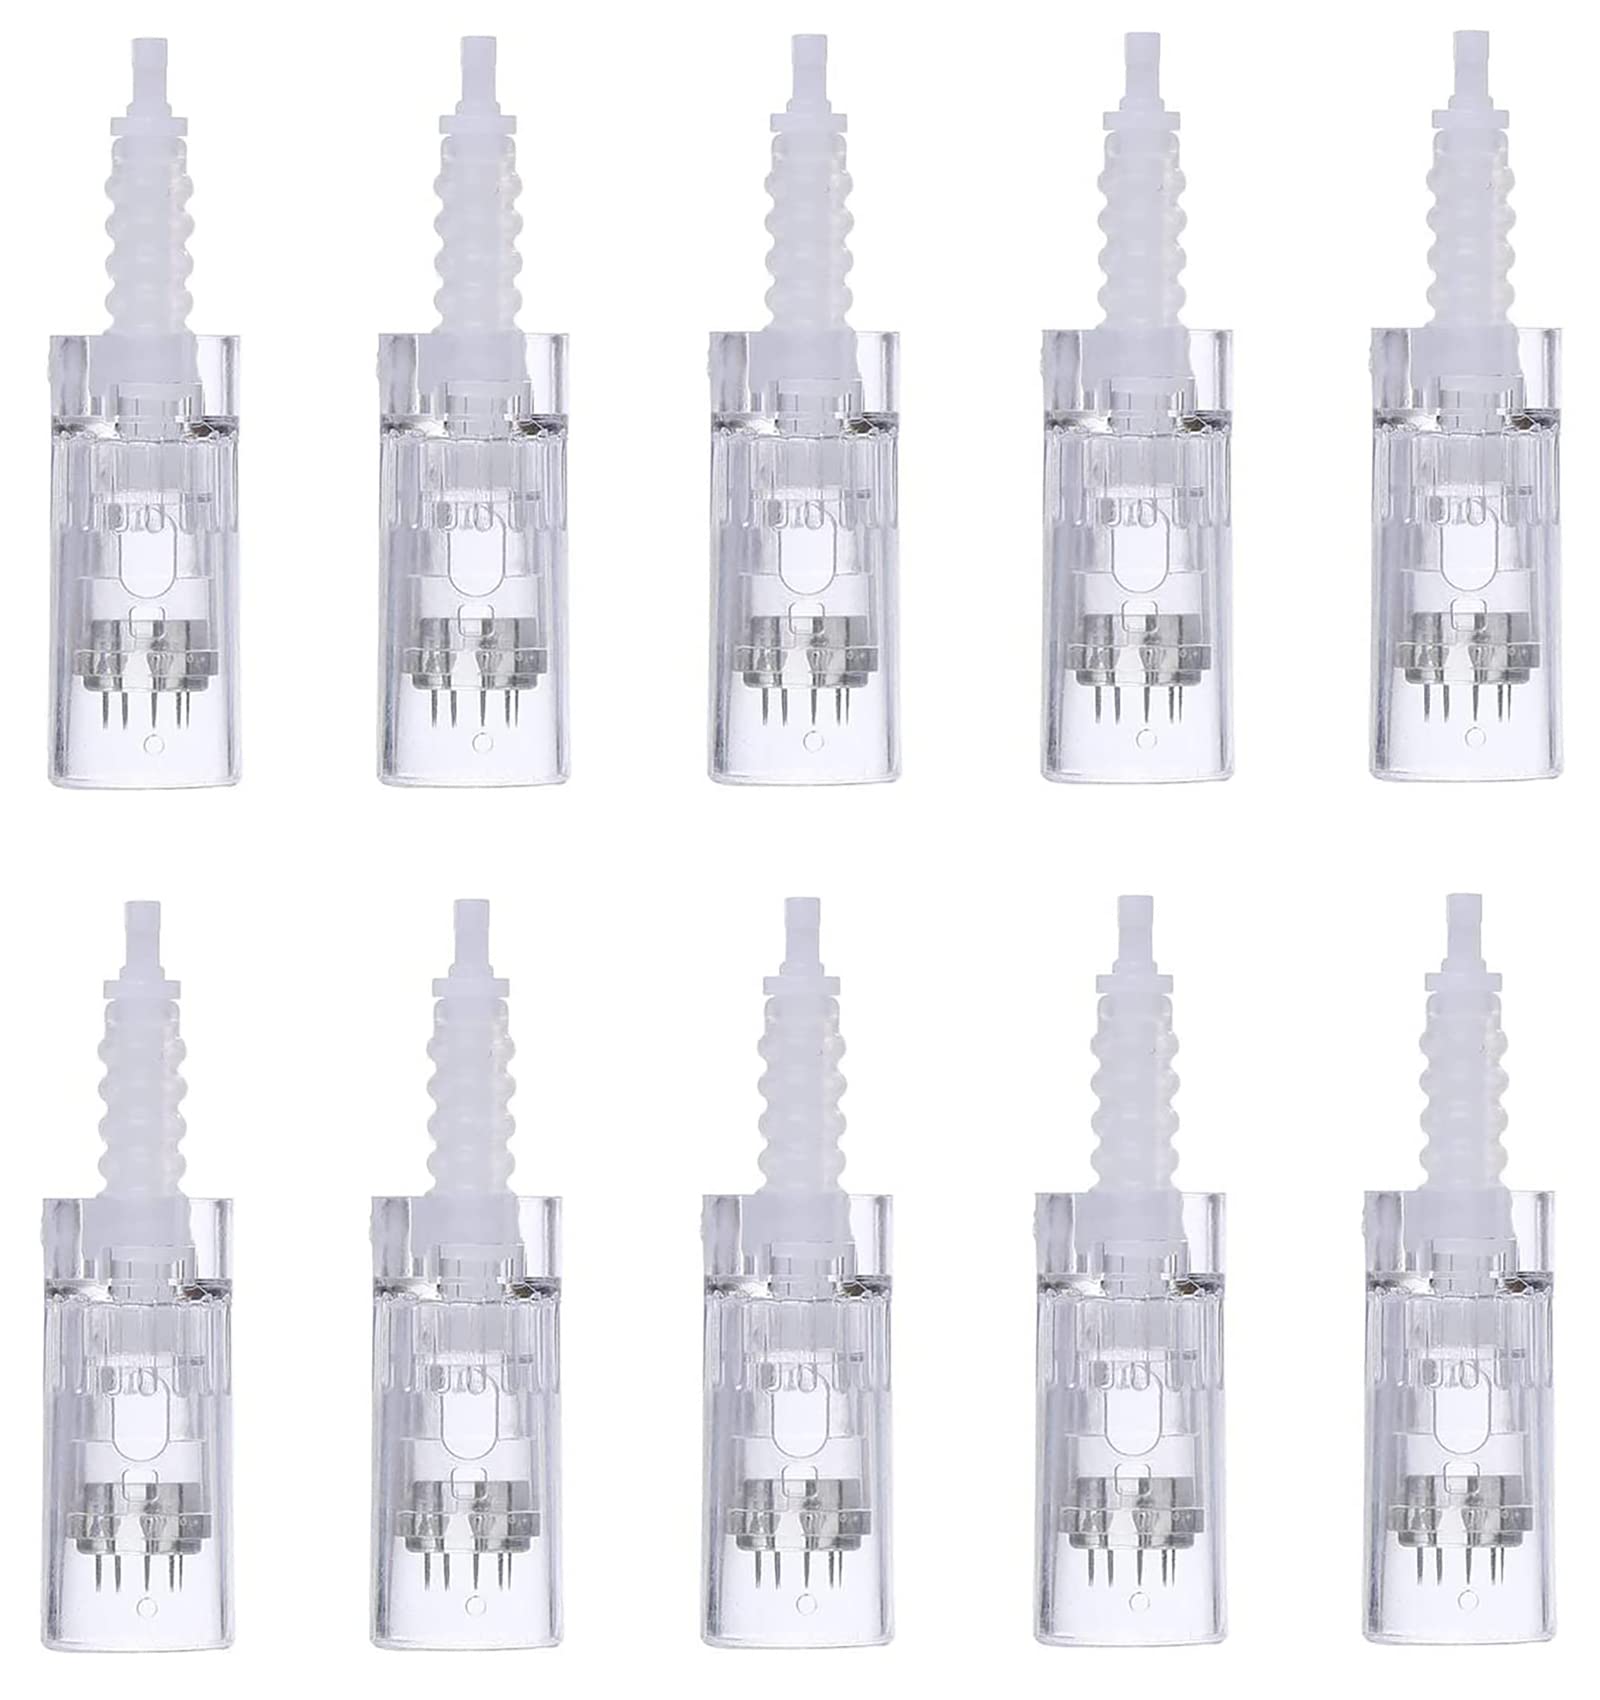 Dr.Pen M5/ M7/ N2 needle cartridges